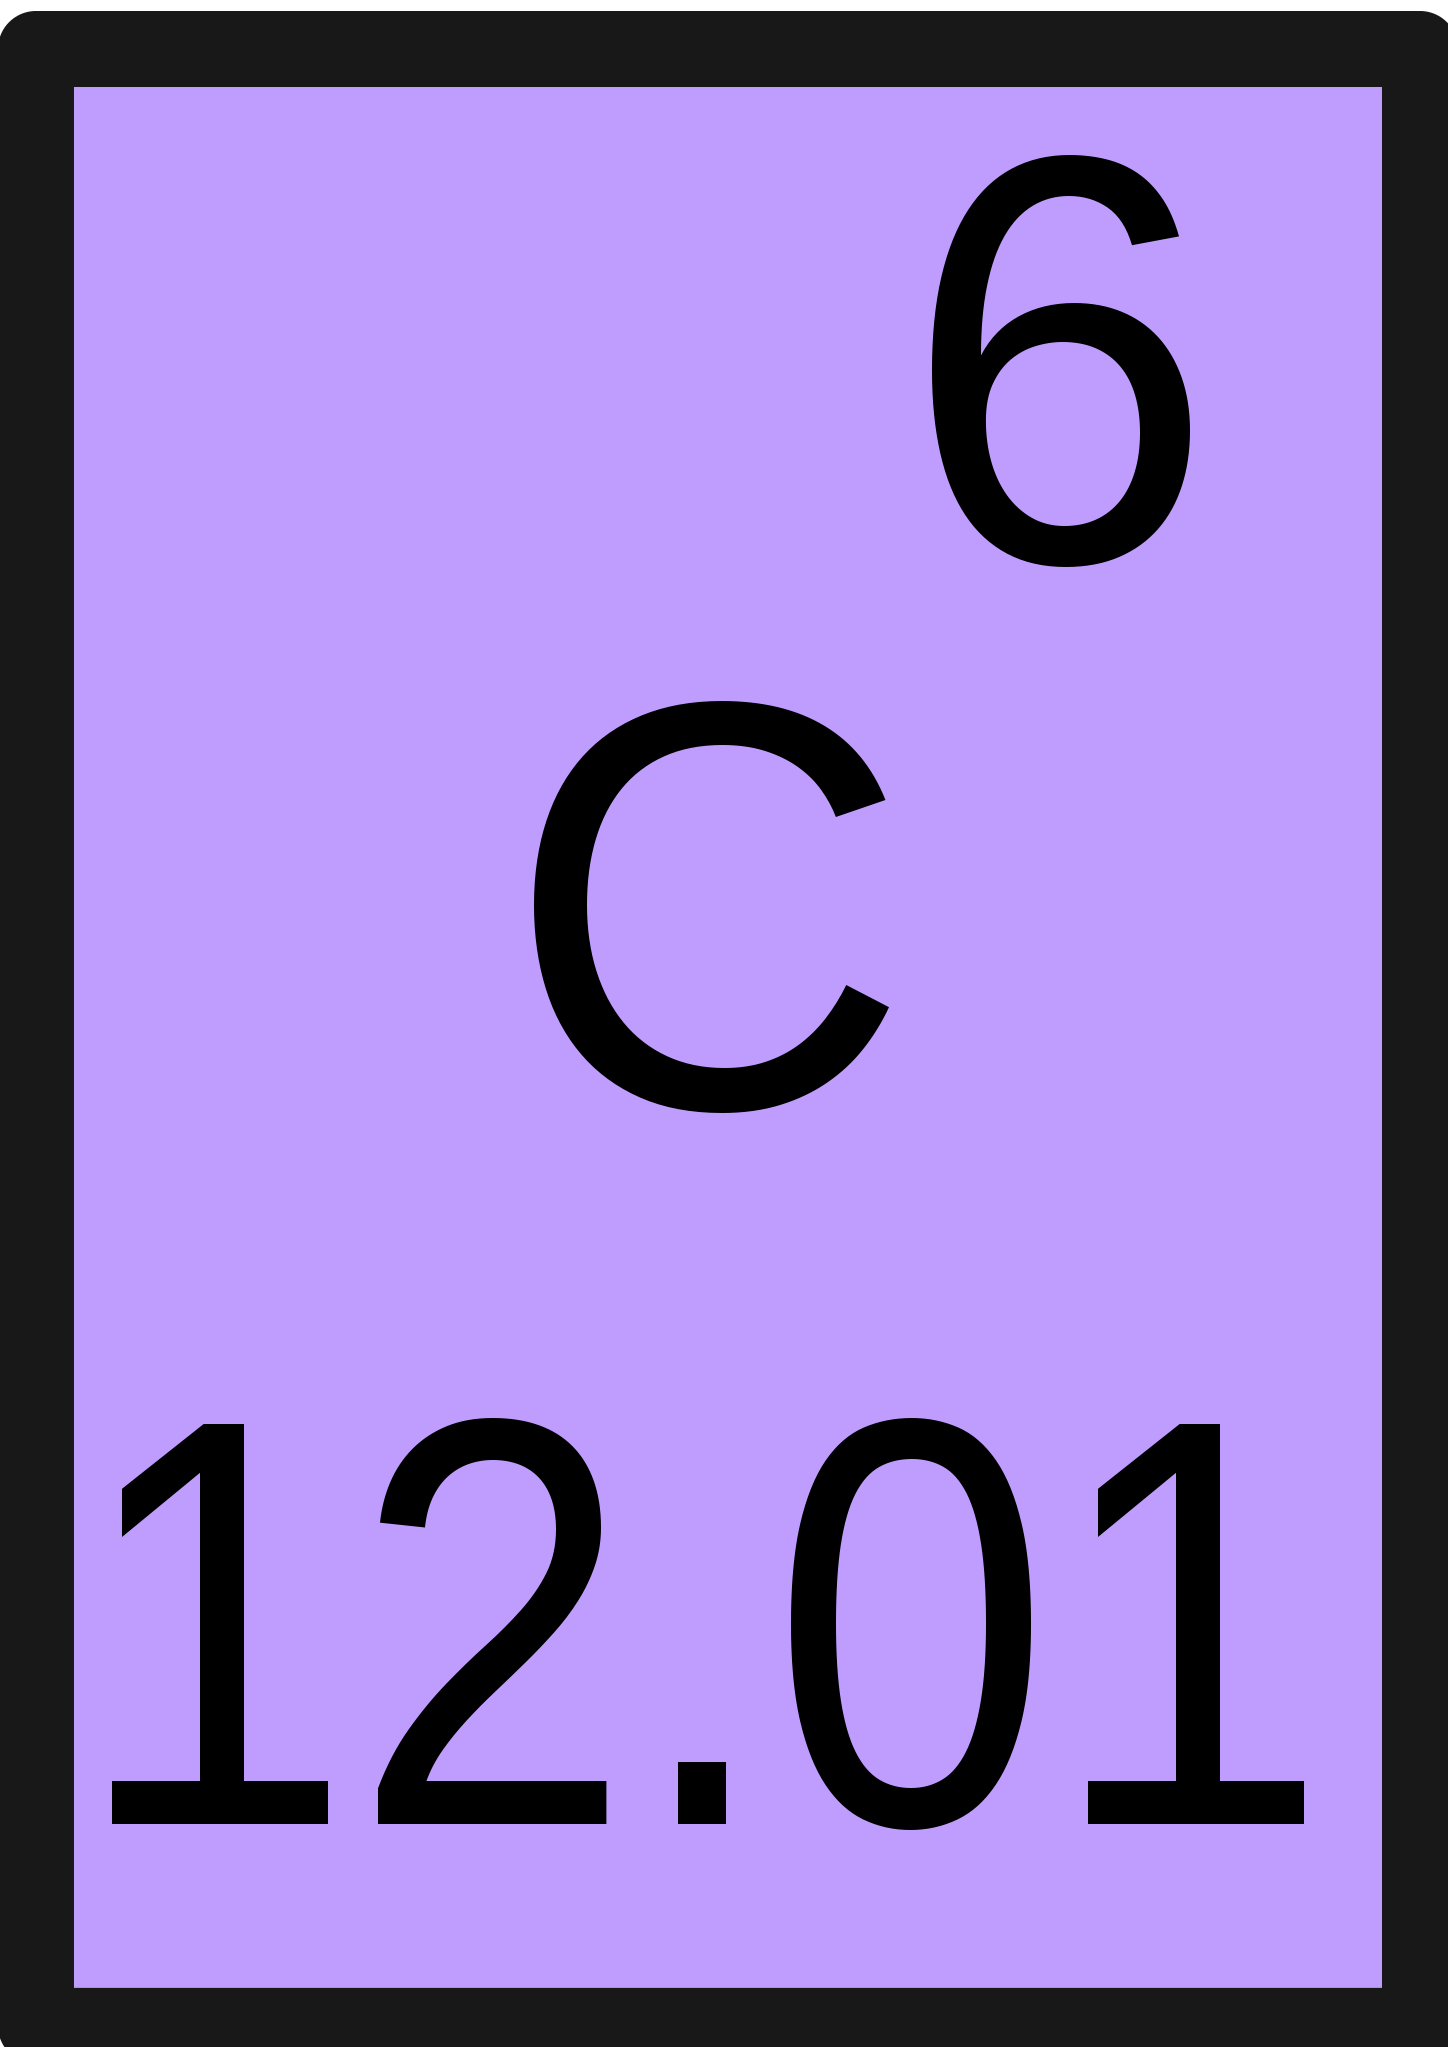 carbon element